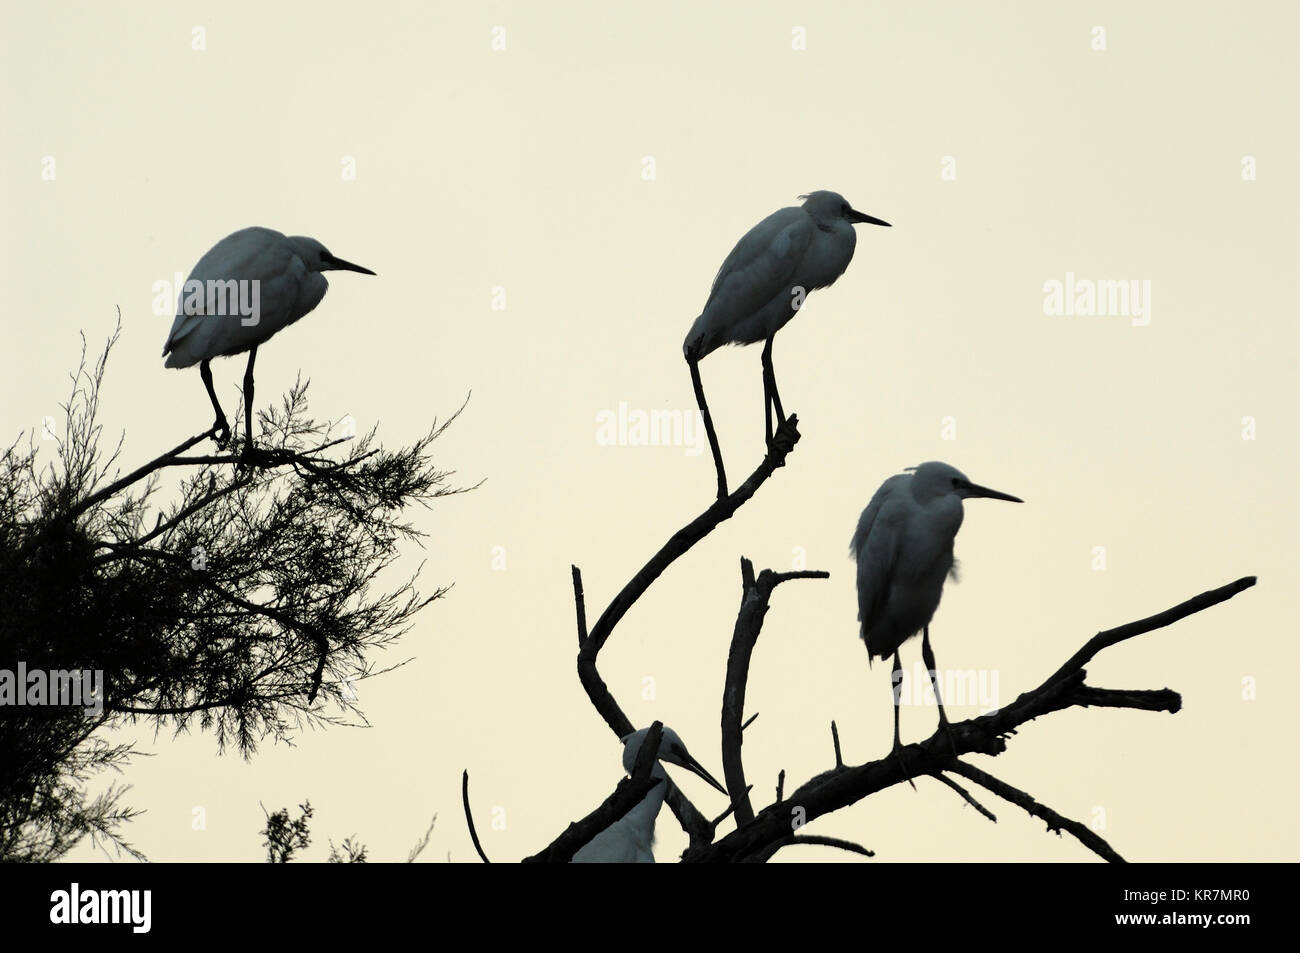 Drei kleine Reiher, Egretta garzetta, Silhouetted in Baum des Heronry oder Heron Rookery, Camargue, Provence, Frankreich Stockfoto